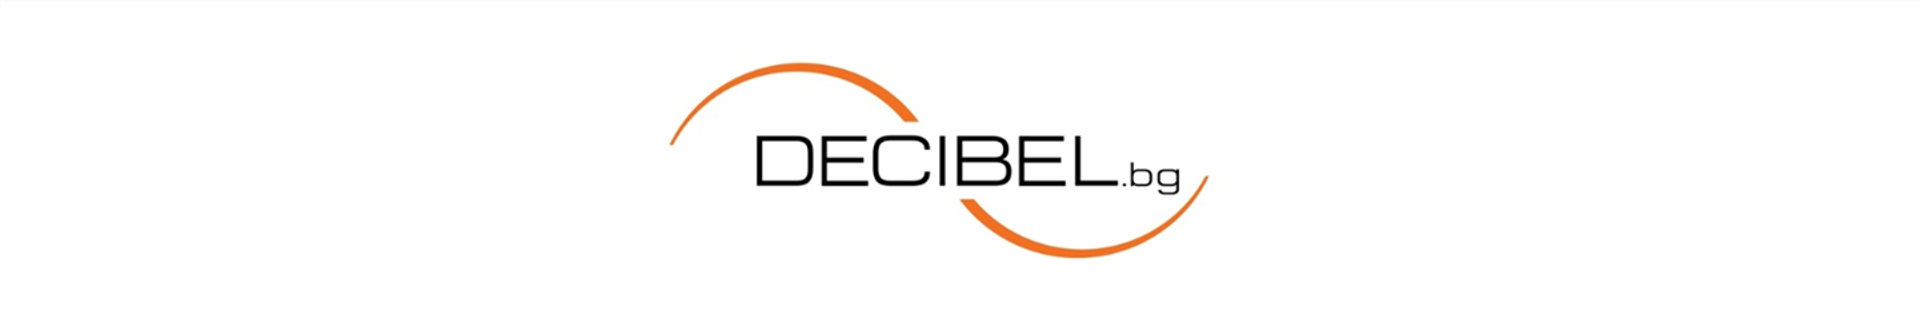 Decibel Ltd